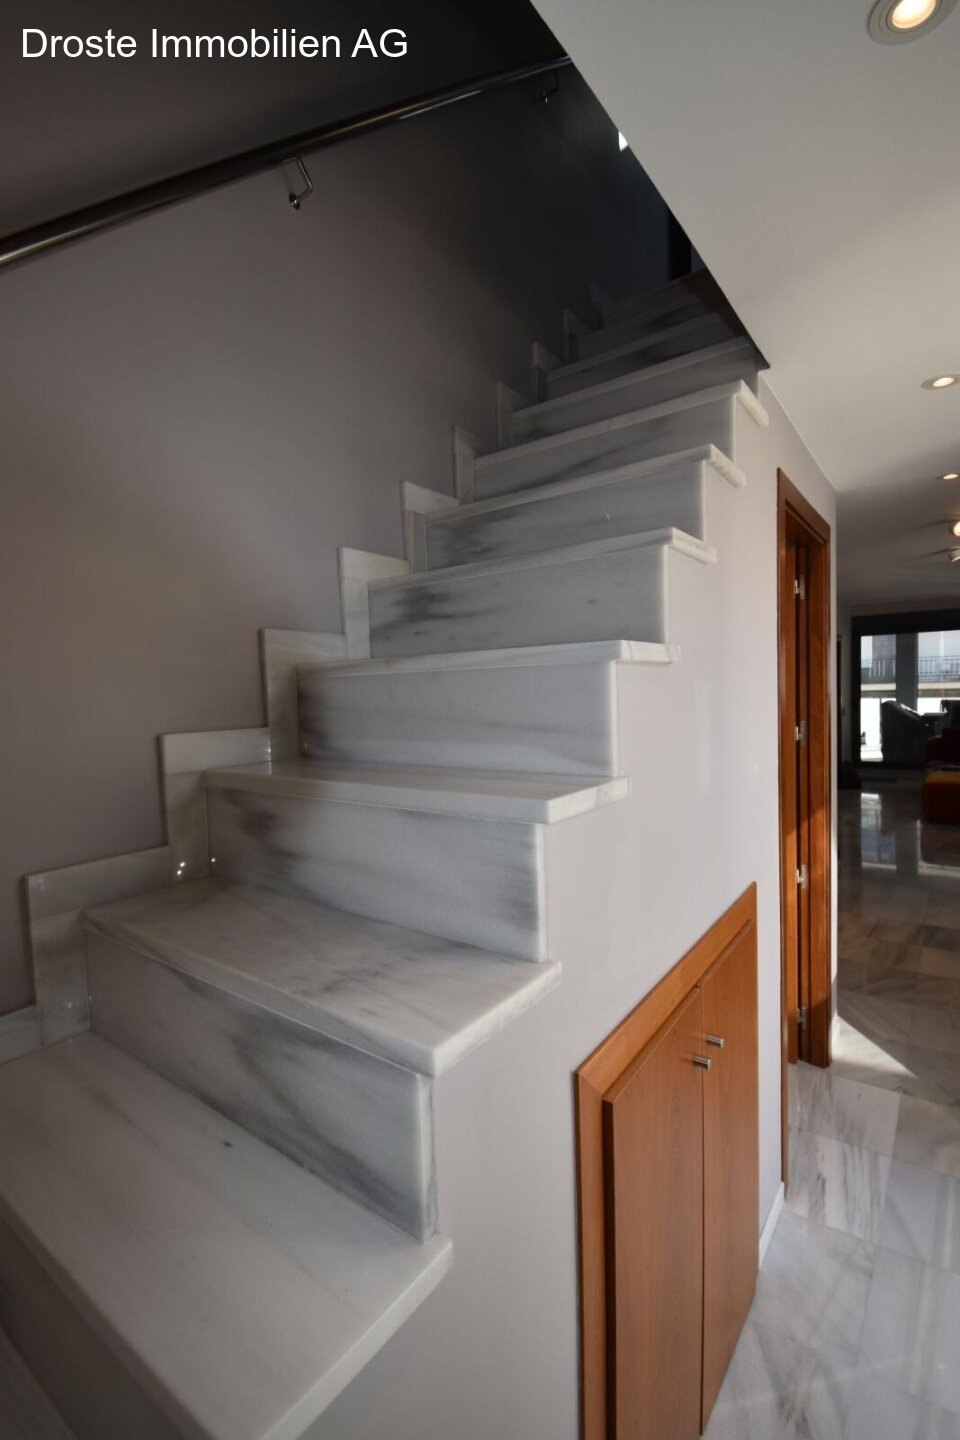 Treppenaufgang mit Stauraum